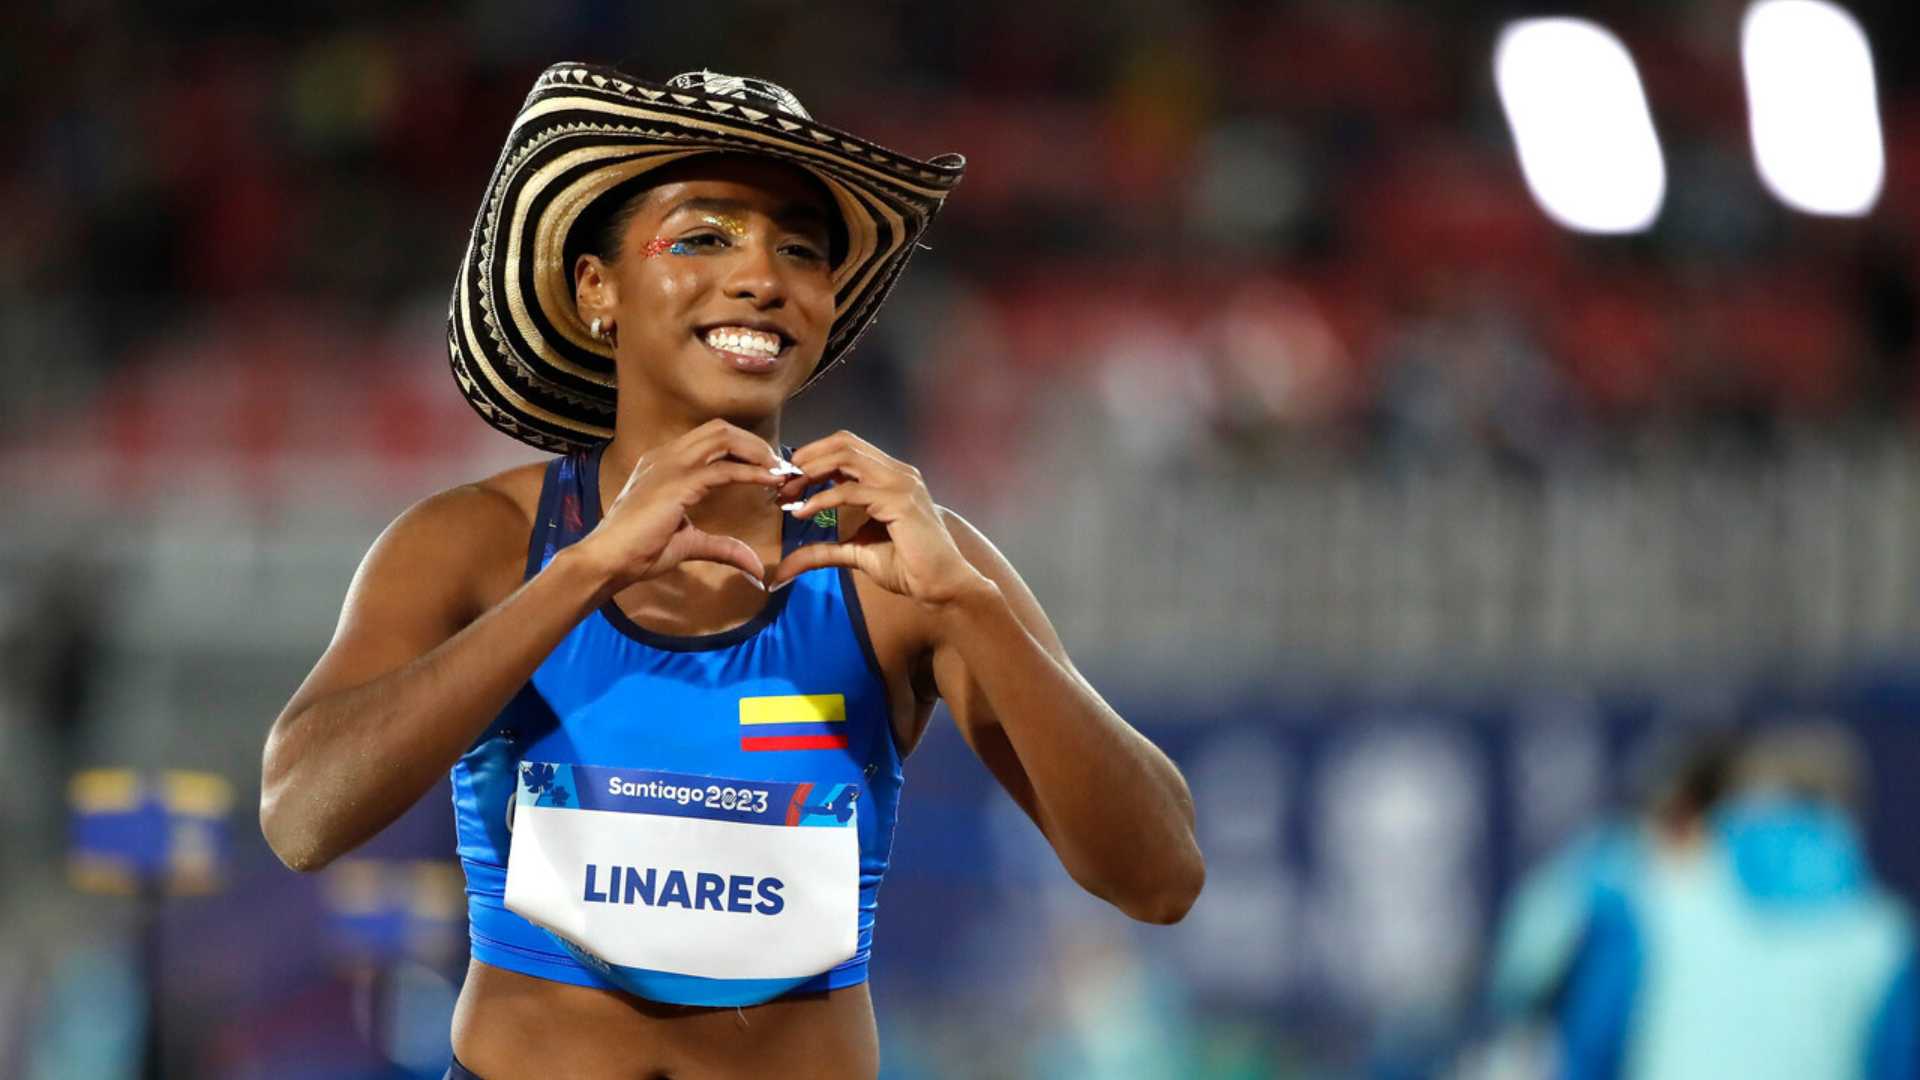 Natalia Linares confirma su favoritismo al adueñarse del salto largo